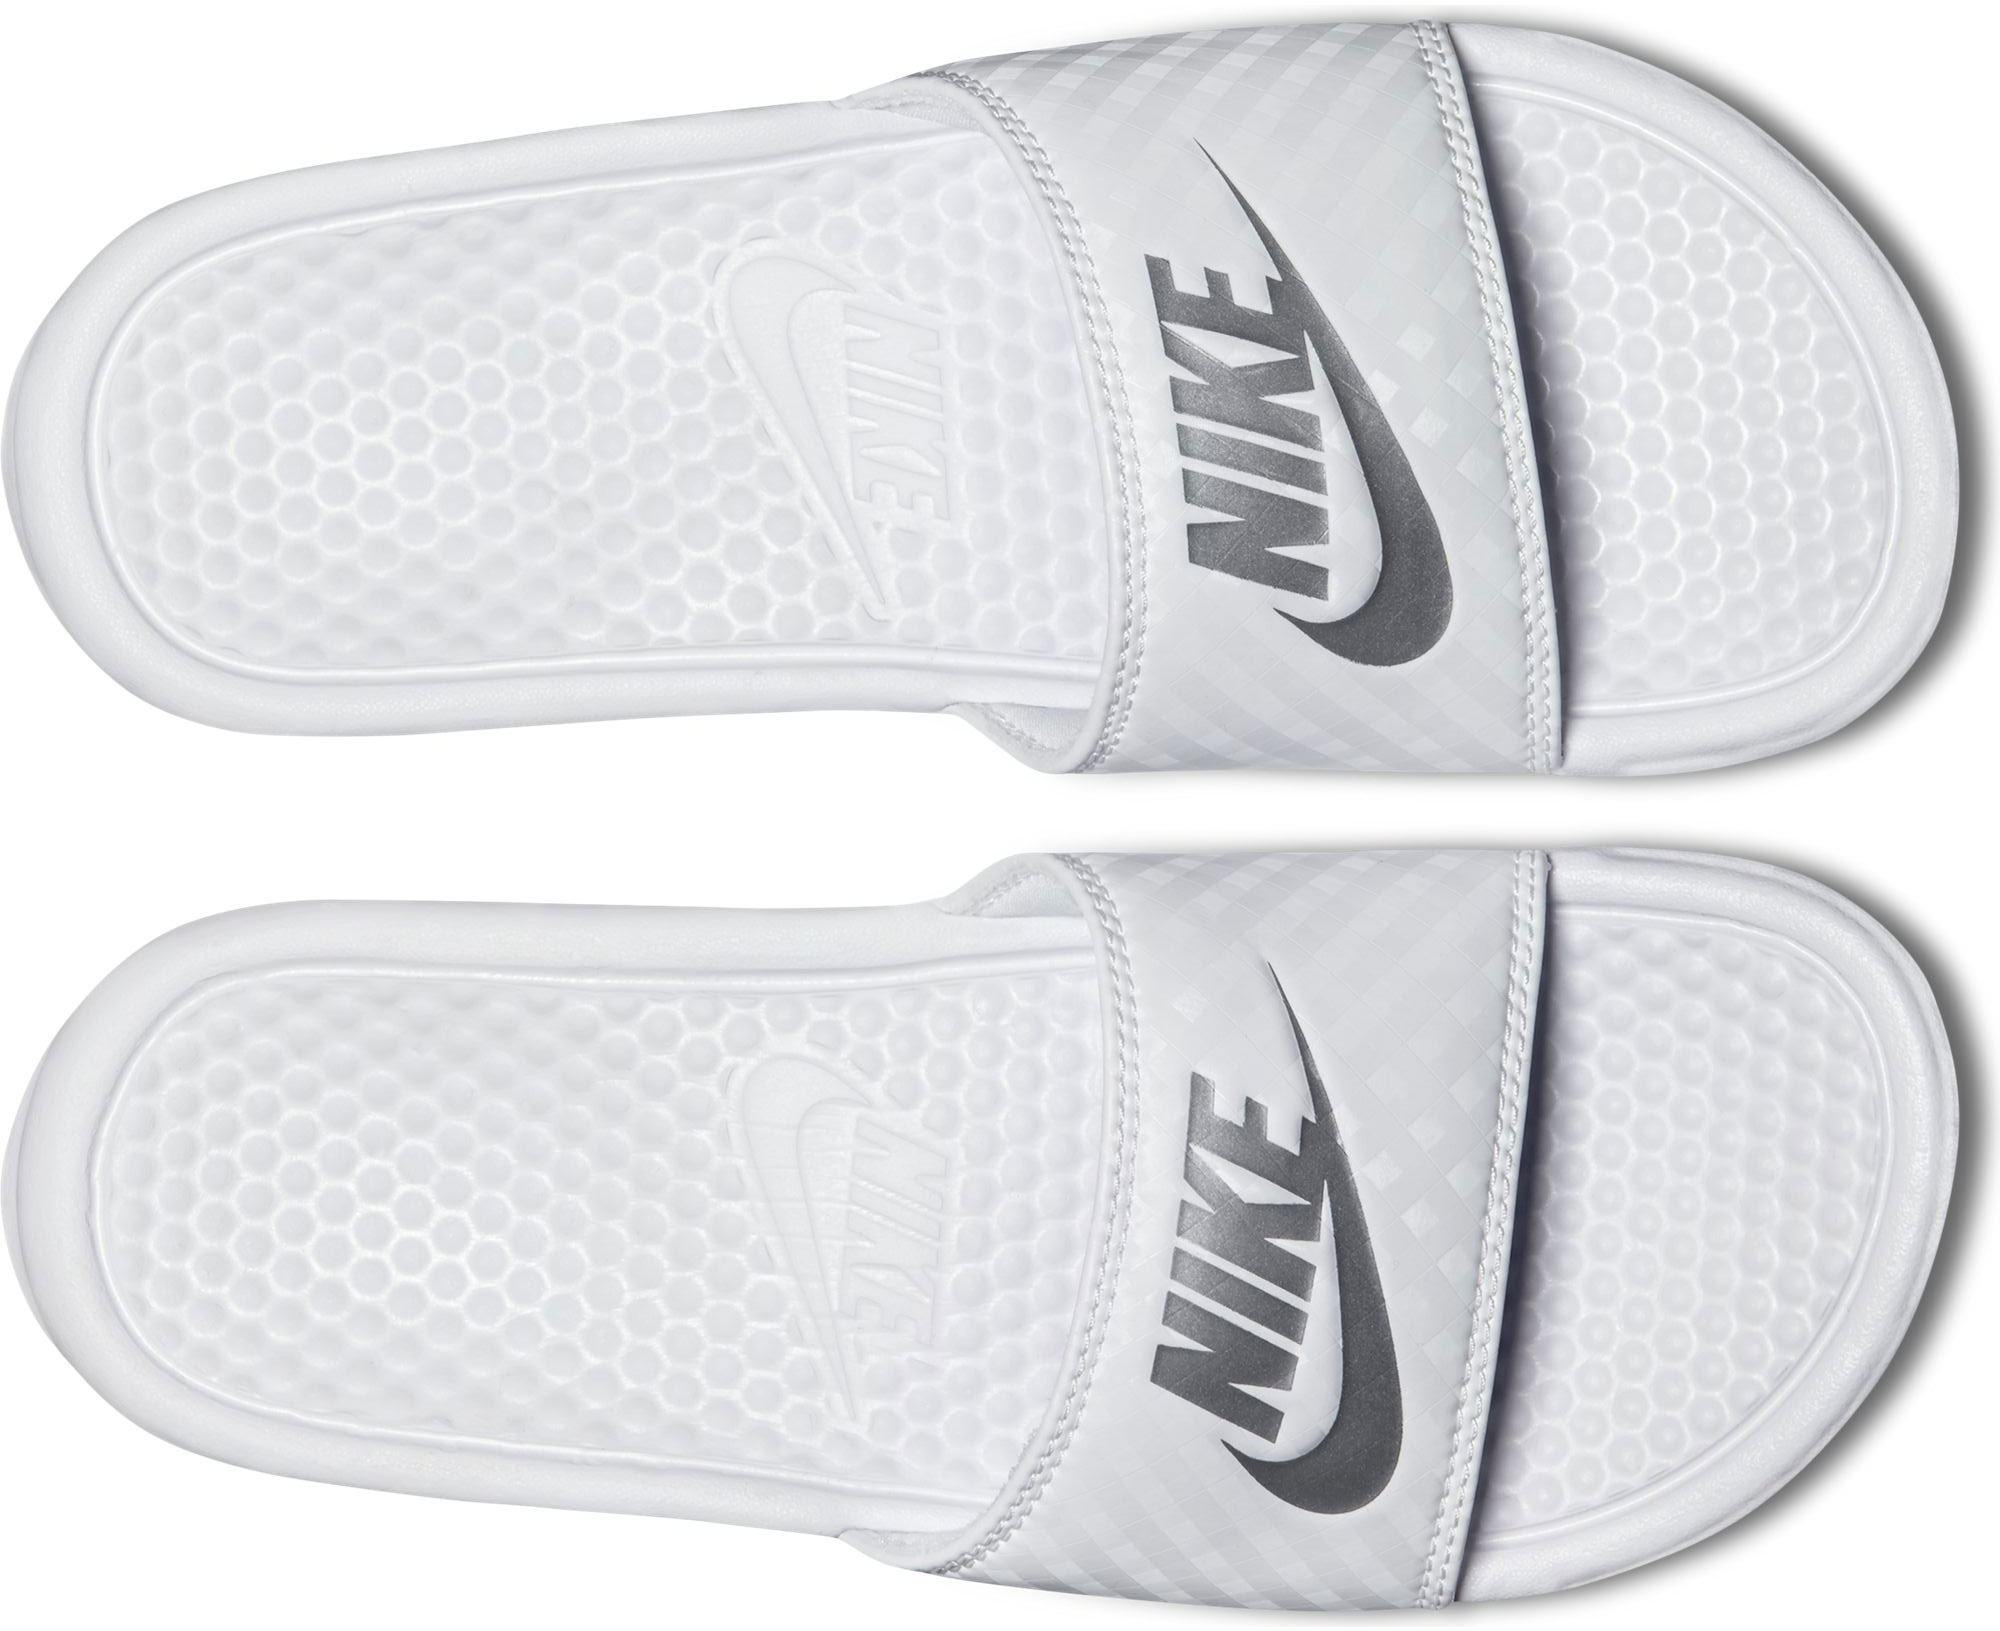 Papuci albi Nike Benassi Jdi 343881-102 Femei